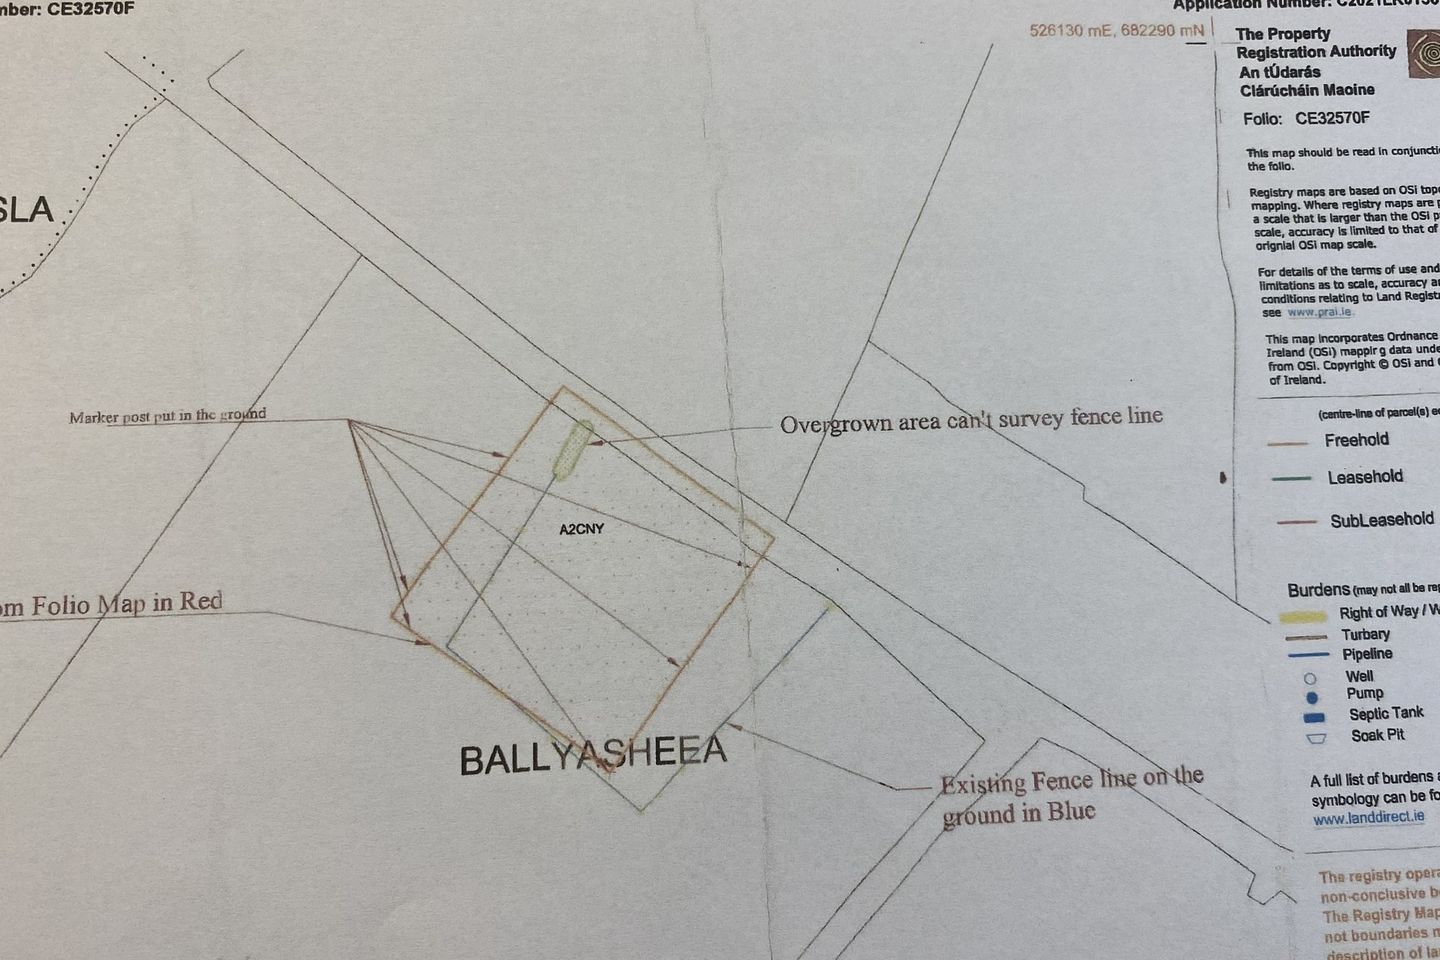 Ballyashea, Kilnamona, Co. Clare